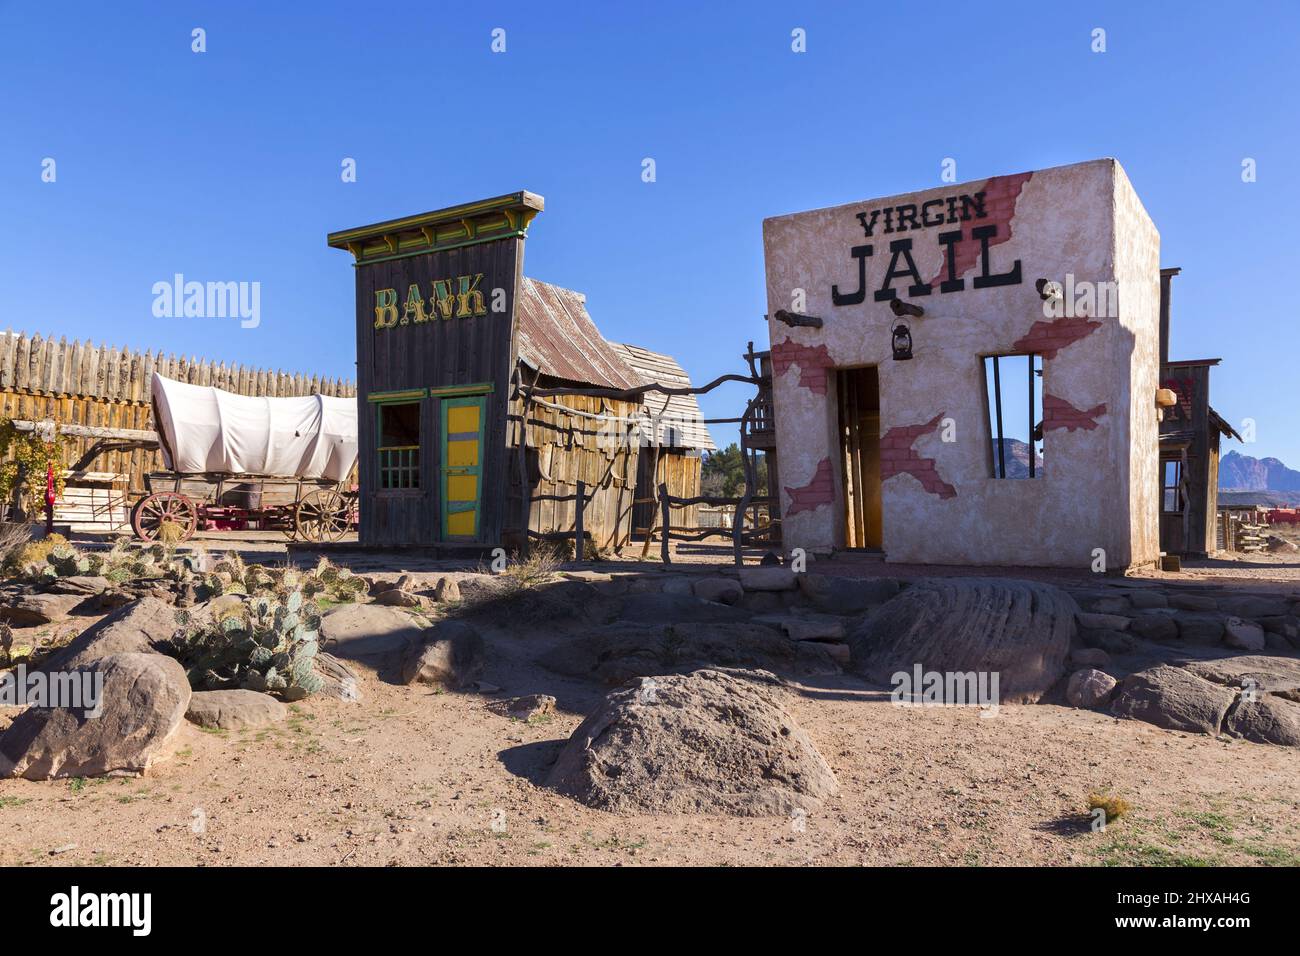 Old Vintage Wild West Frontier Town Trading Post ou Zion fort avec Bank, prison Buildings et Stage Coach Wagon à Virgin, Utah, États-Unis Banque D'Images